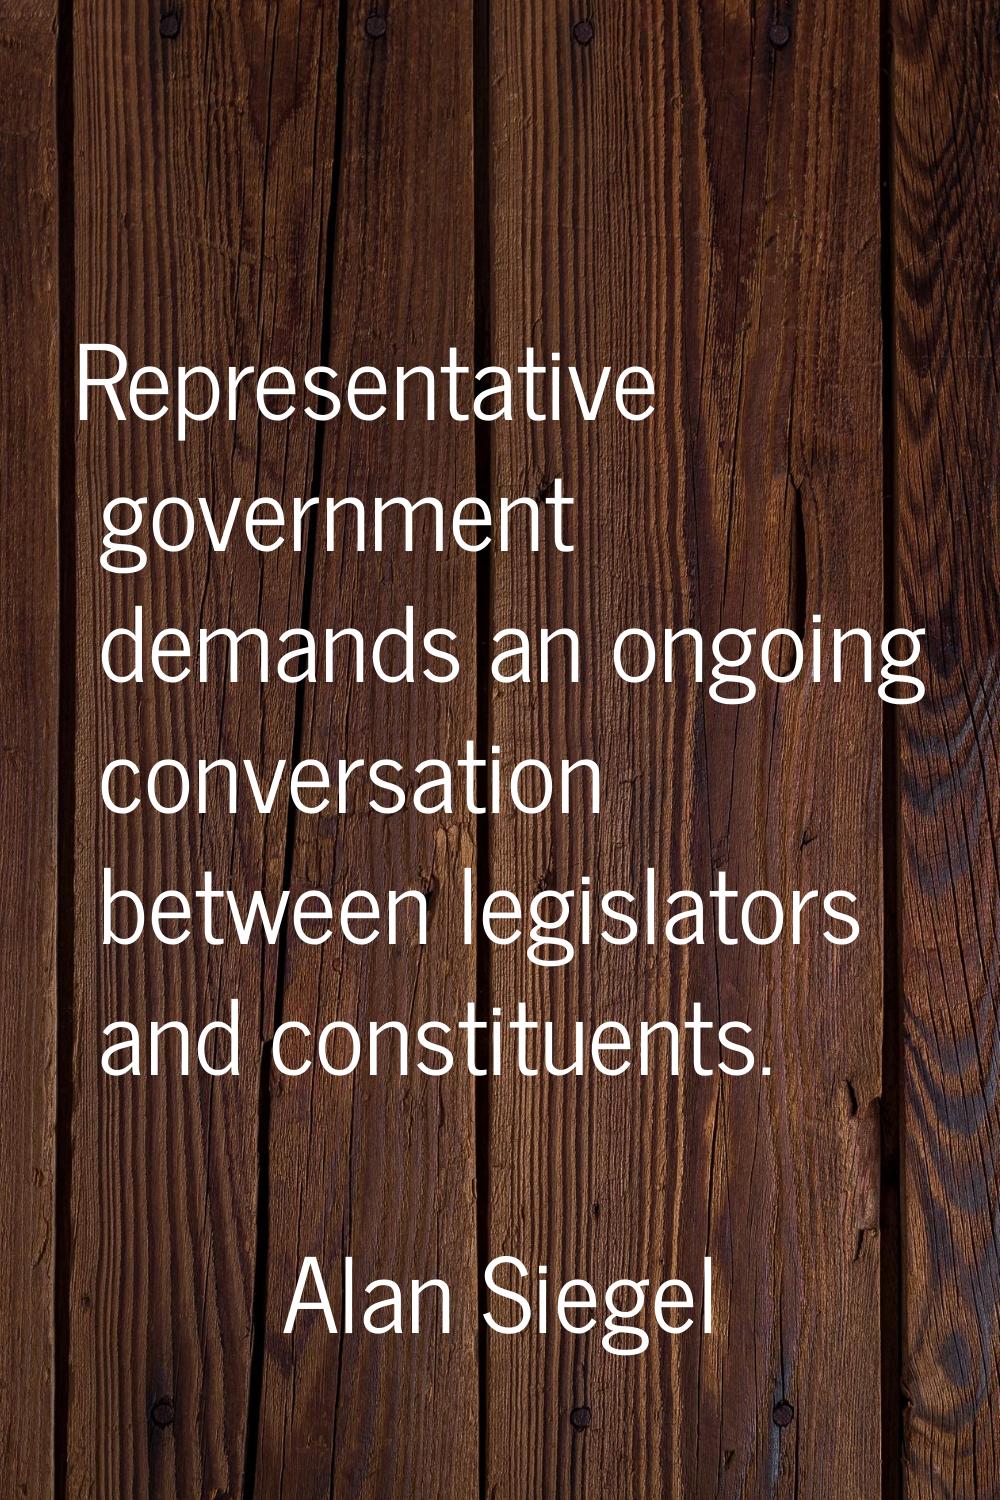 Representative government demands an ongoing conversation between legislators and constituents.